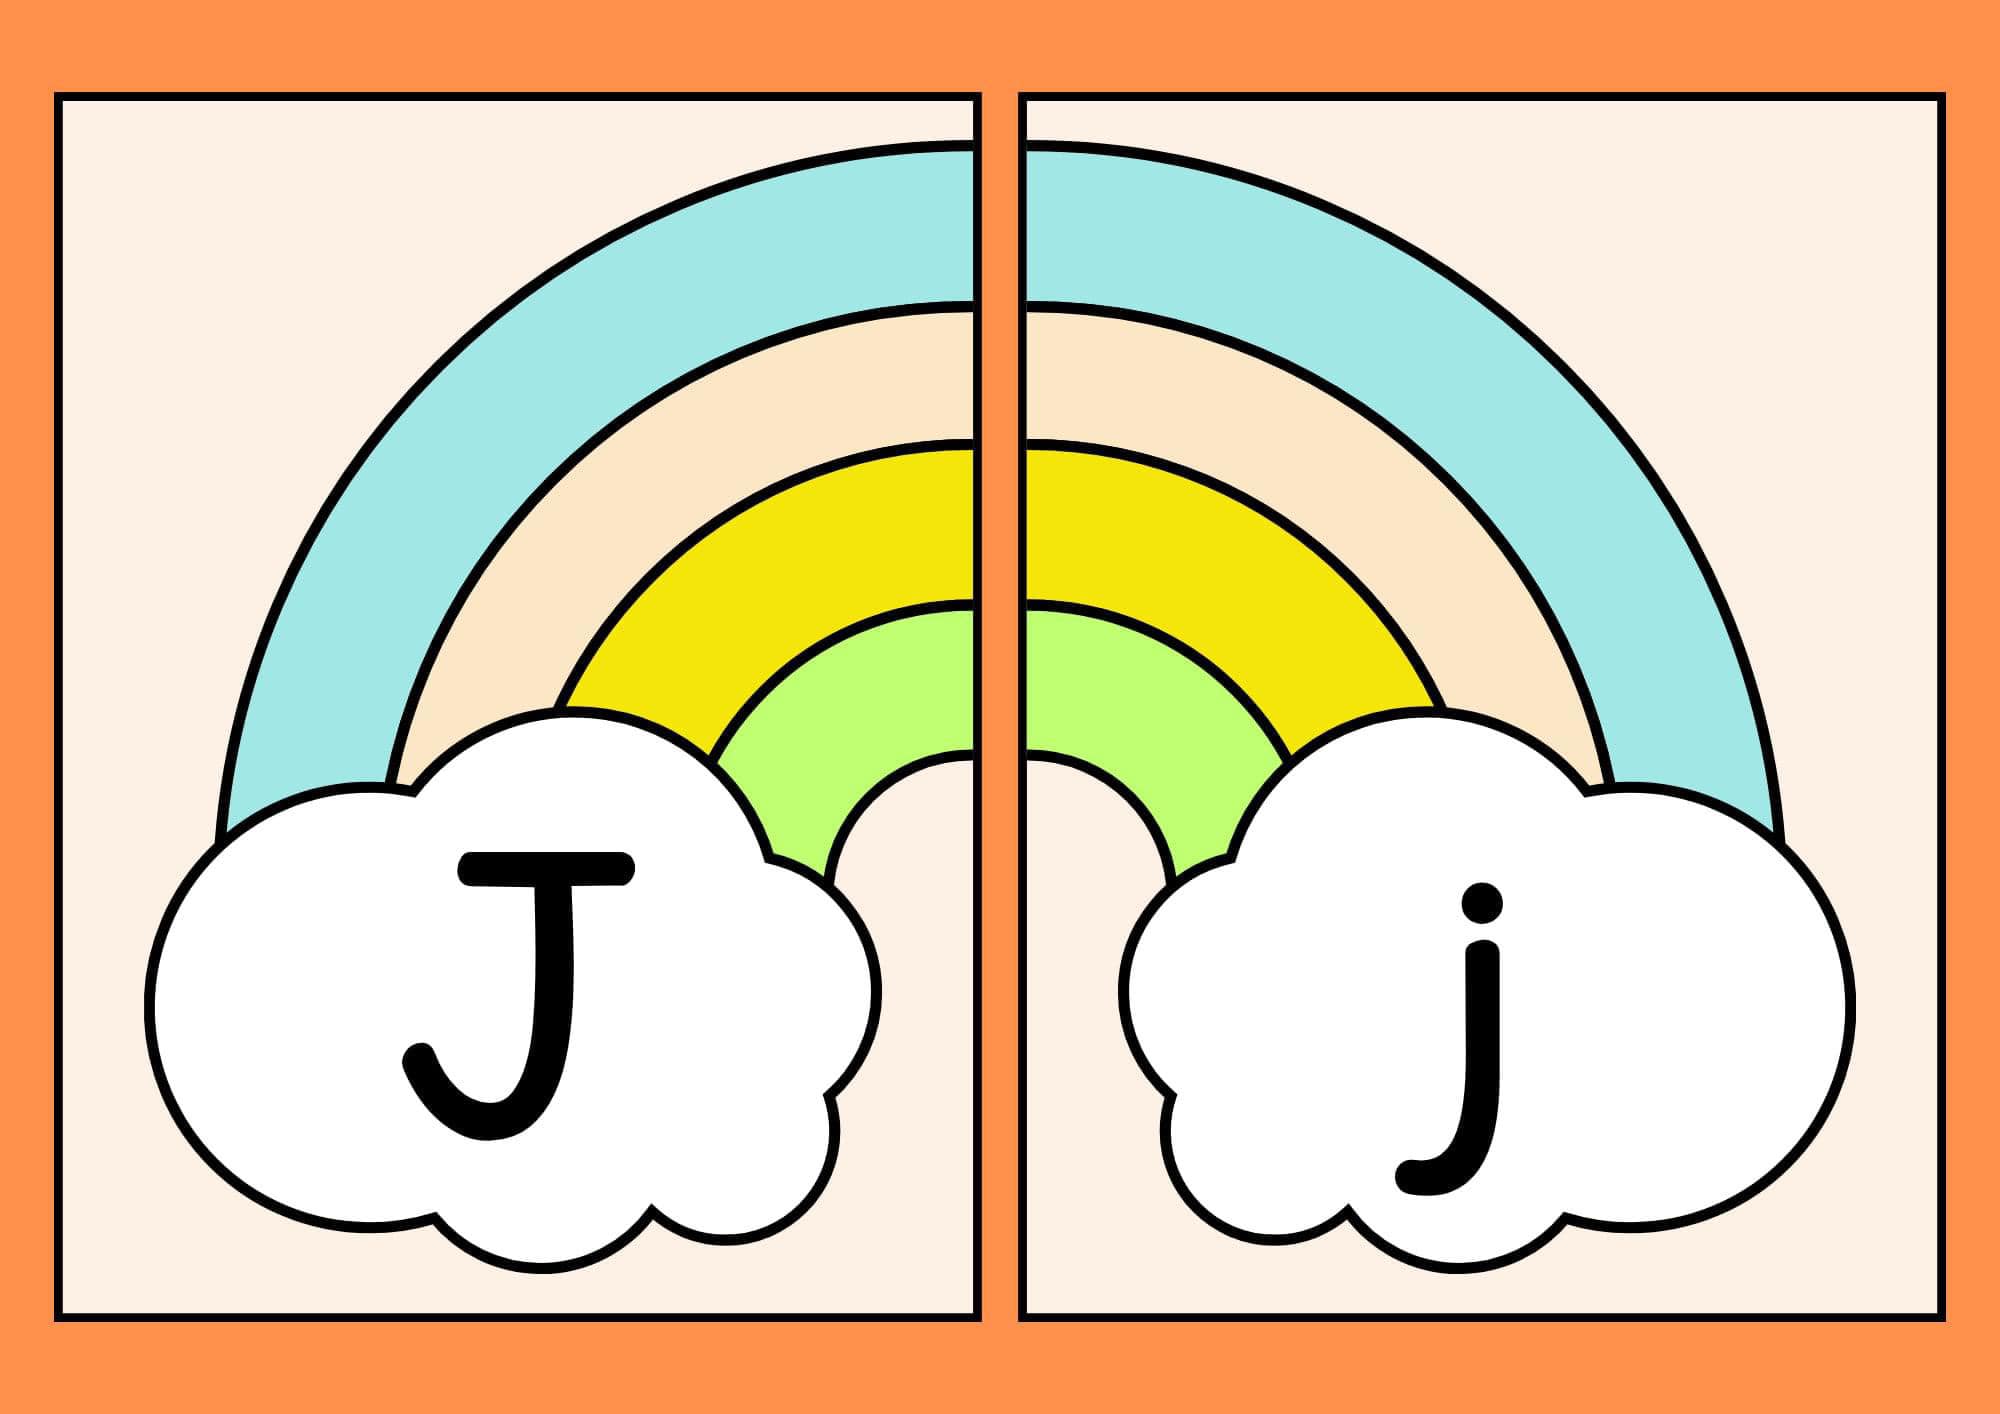 Alfabeto arco íris Jj